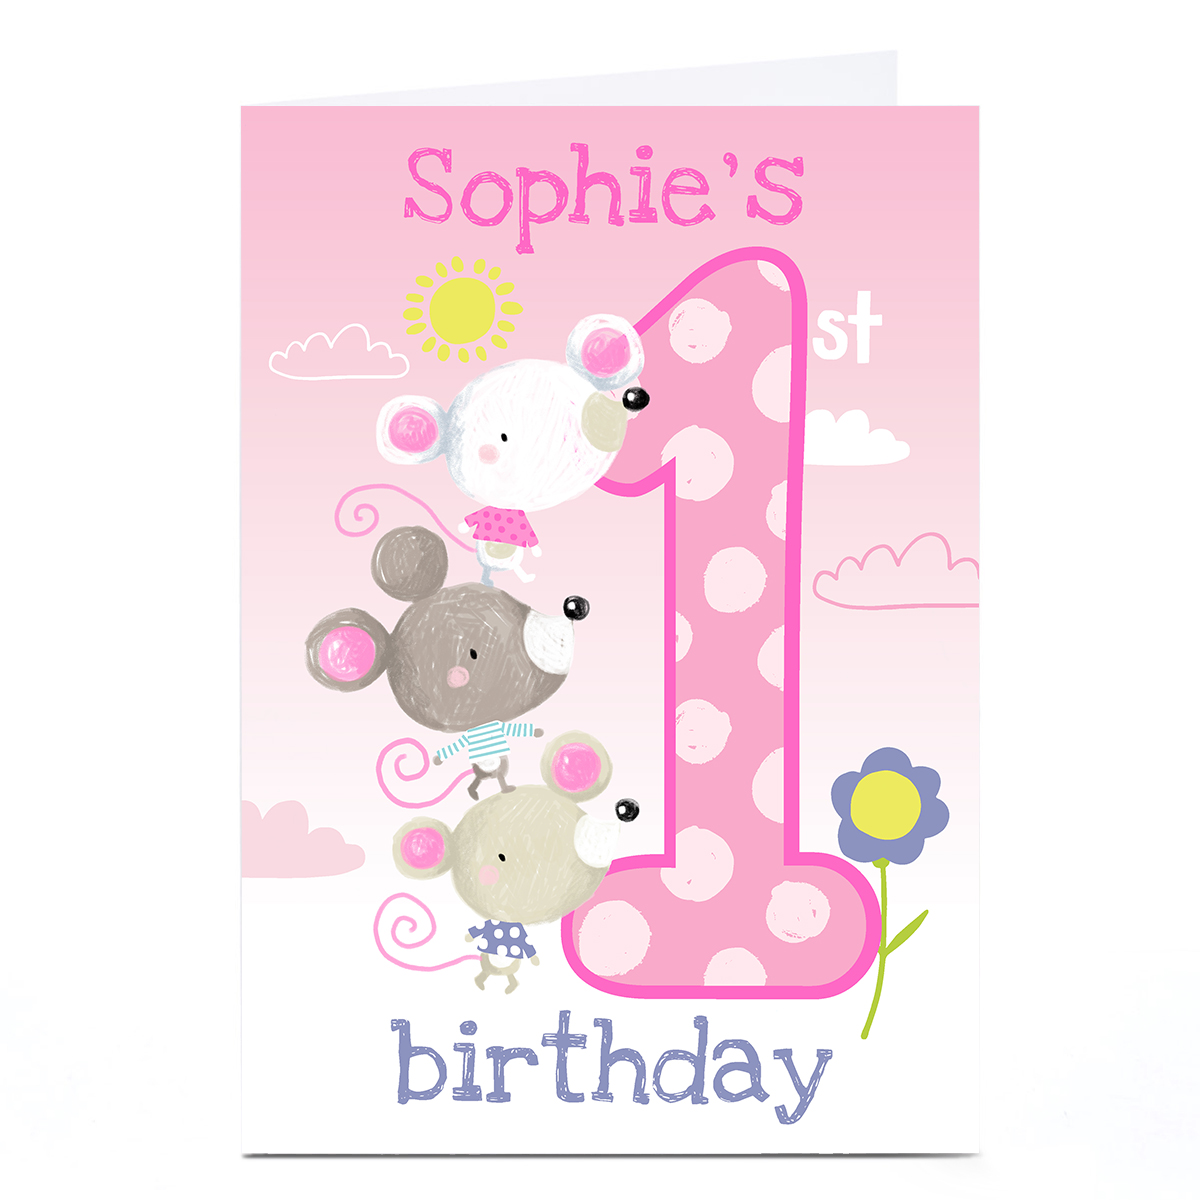 Personalised Bev Hopwood 1st Birthday Card - Cute Mice